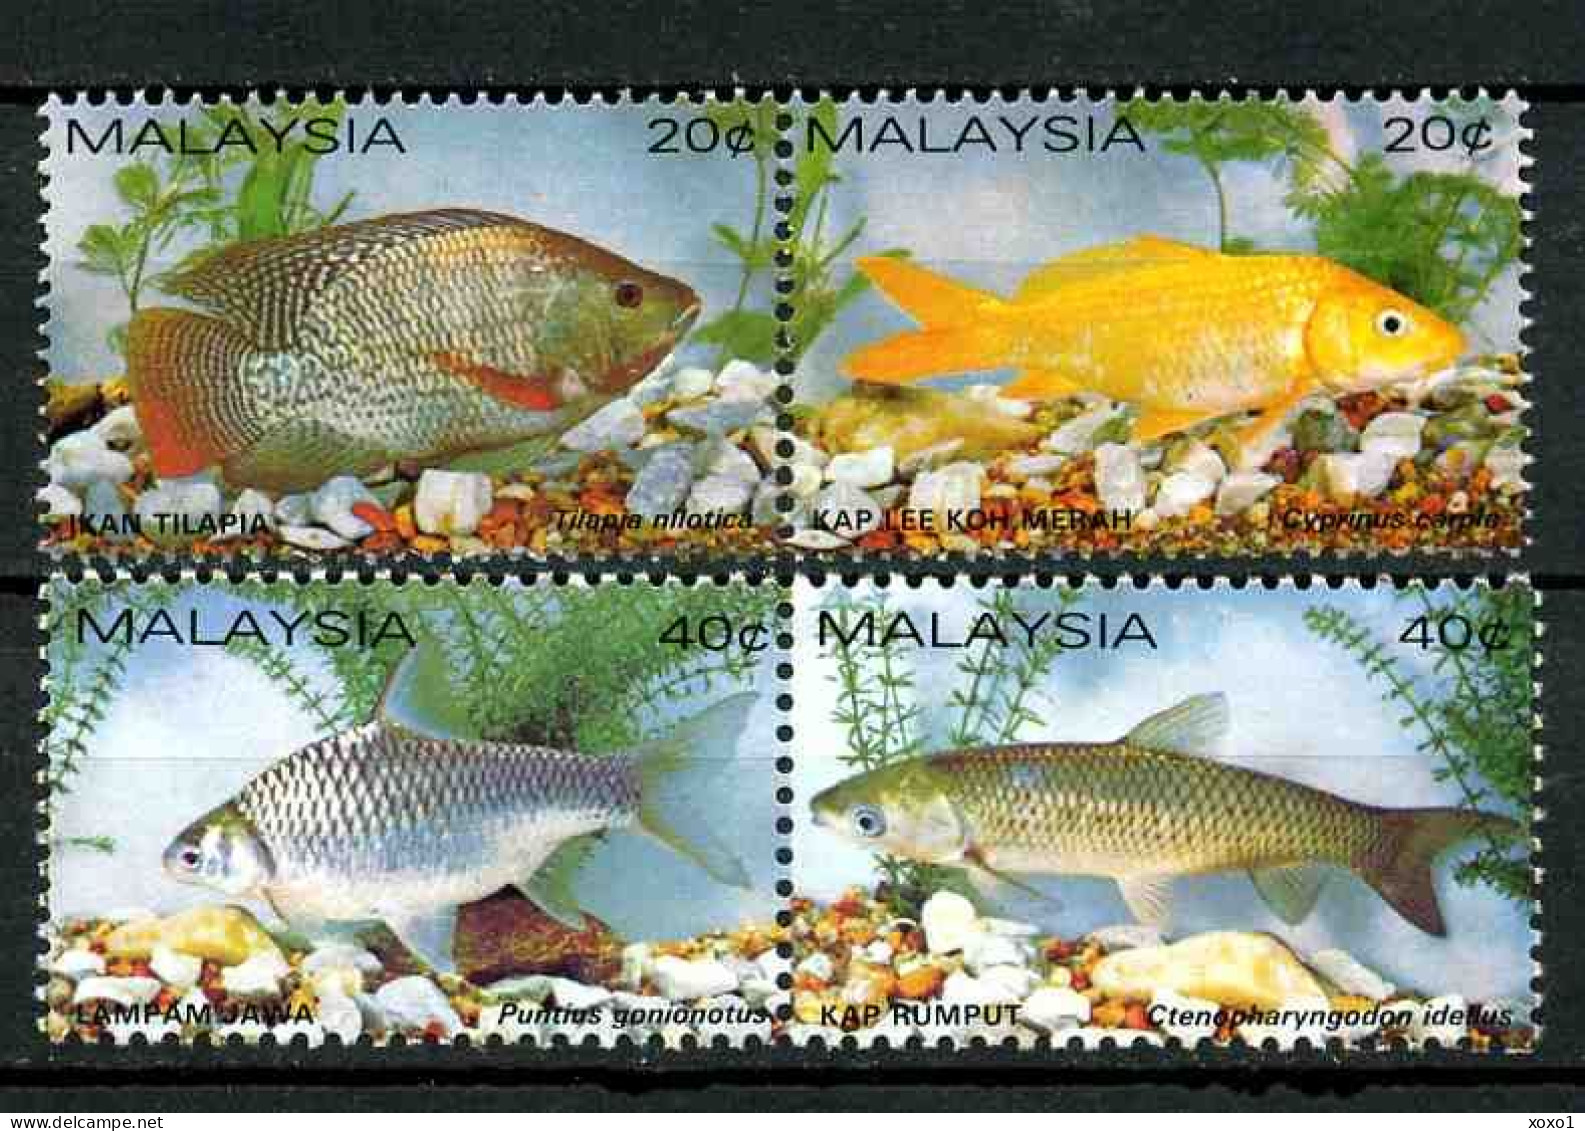 Malaysia 1983 MiNr. 258 - 261 Marine Life Fishes 4v   MNH** 12.00 € - Poissons